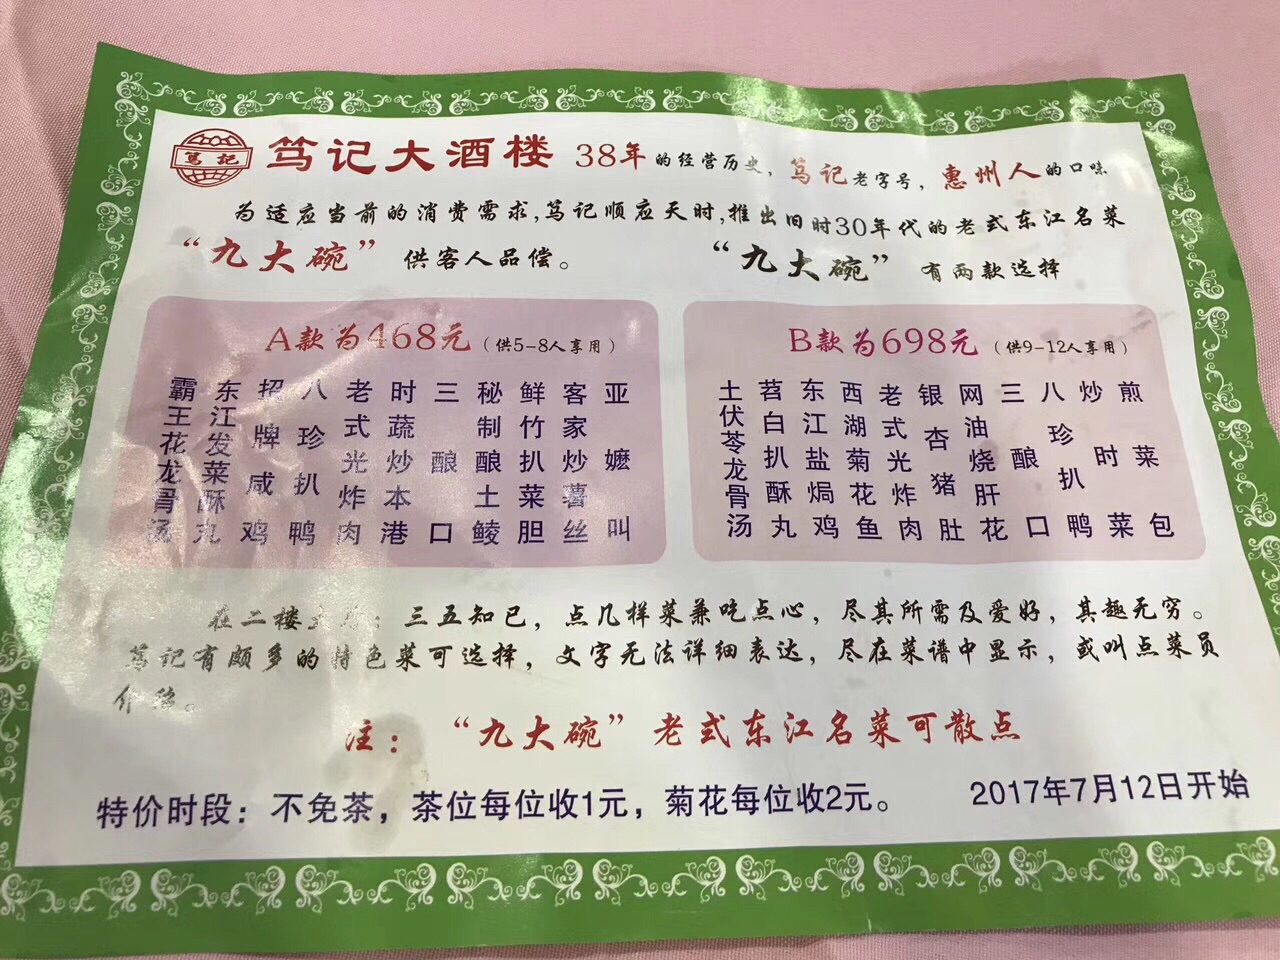 炳胜饮食集团官网